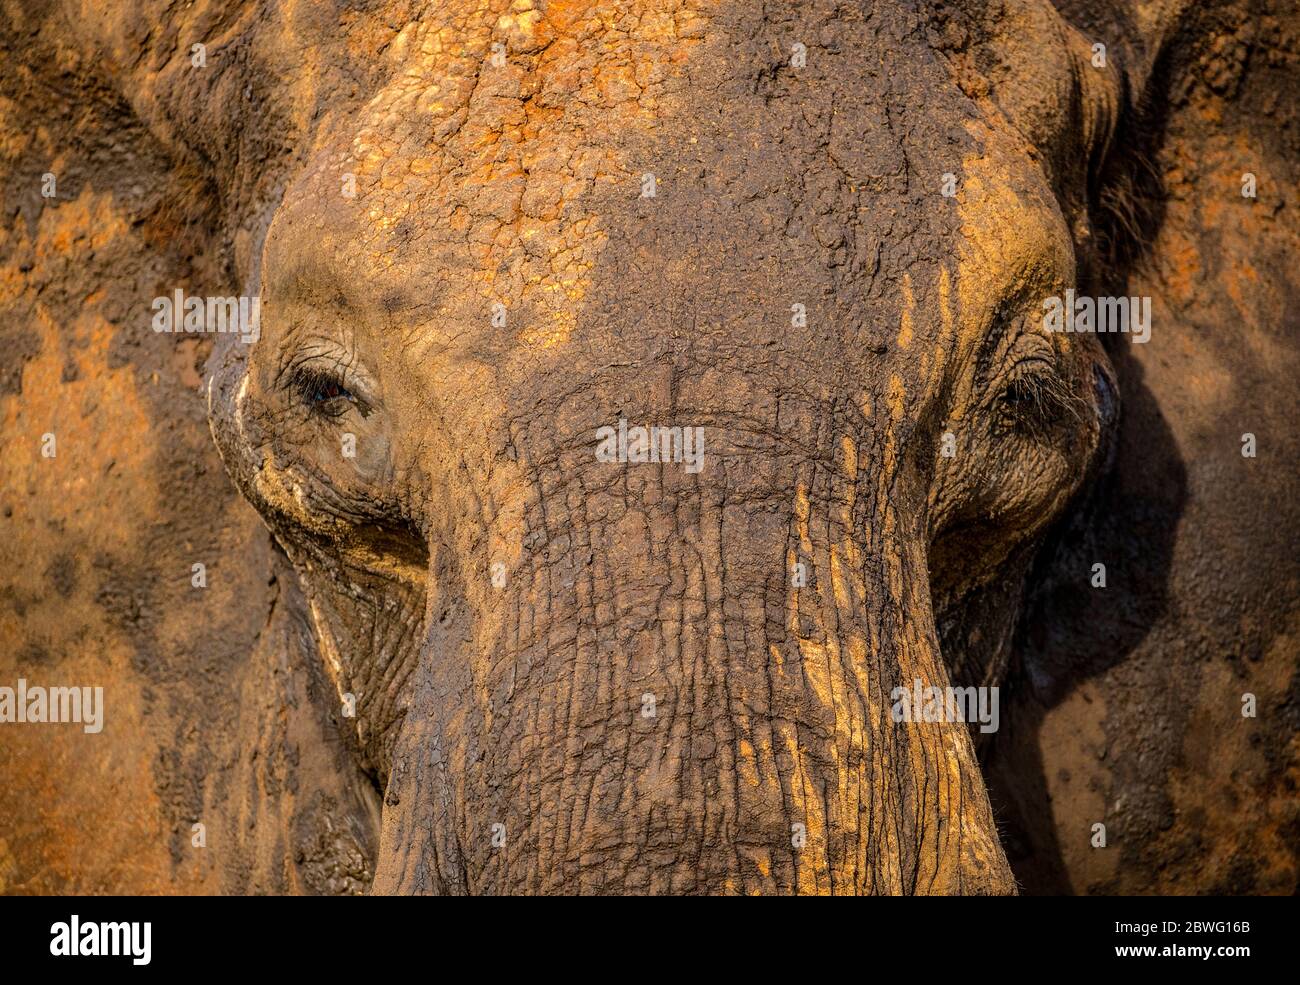 Close-up of African elephant (Loxodonta africana), Tarangire National Park, Tanzania, Africa Stock Photo